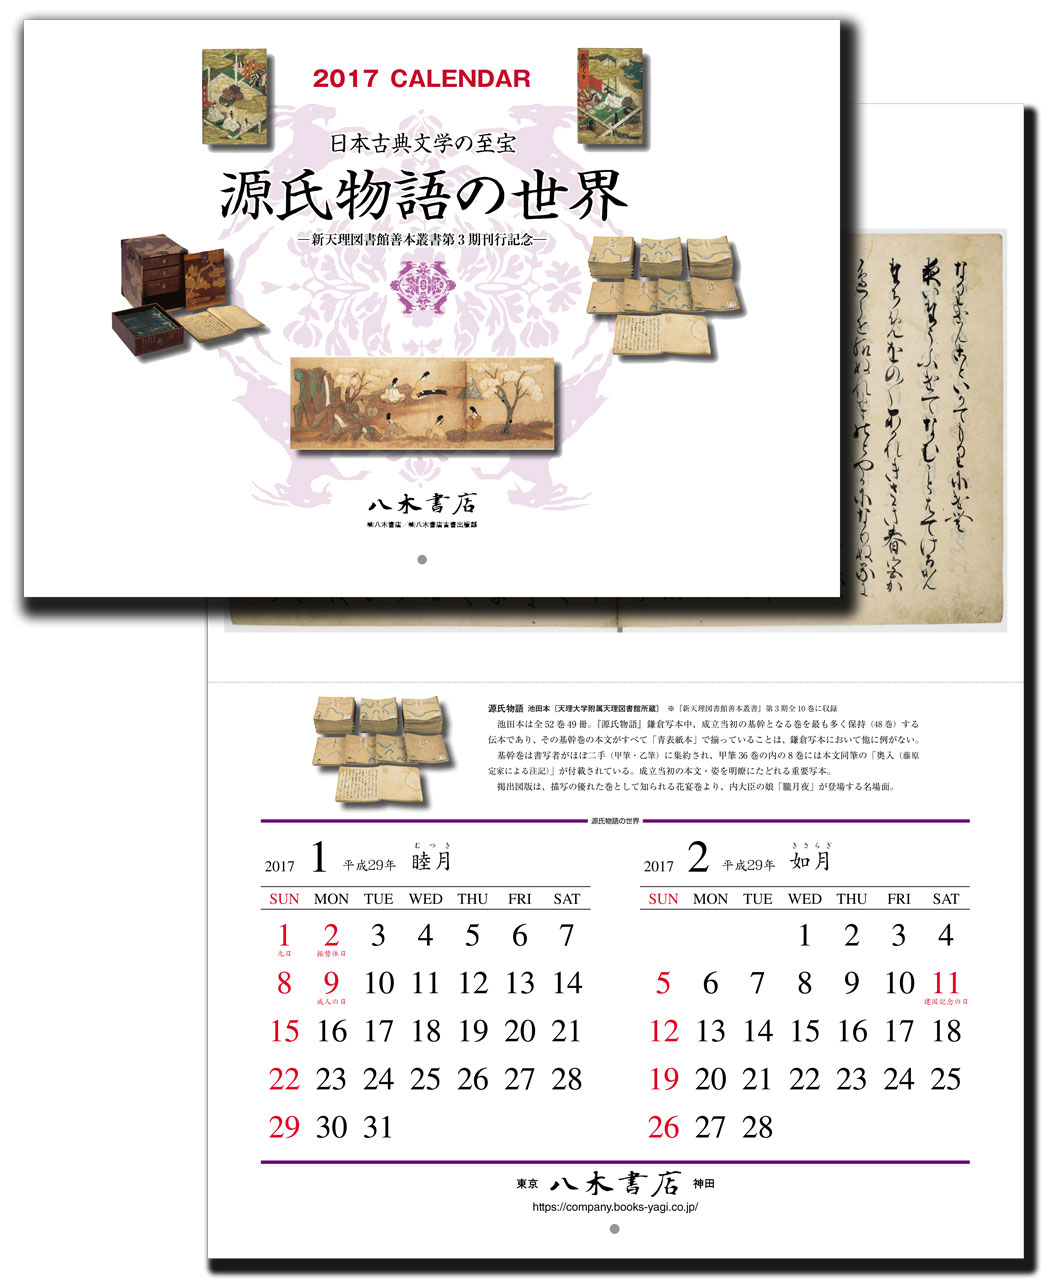 プレゼント 17年特製カレンダー 源氏物語の世界 をプレゼント 八木書店グループ